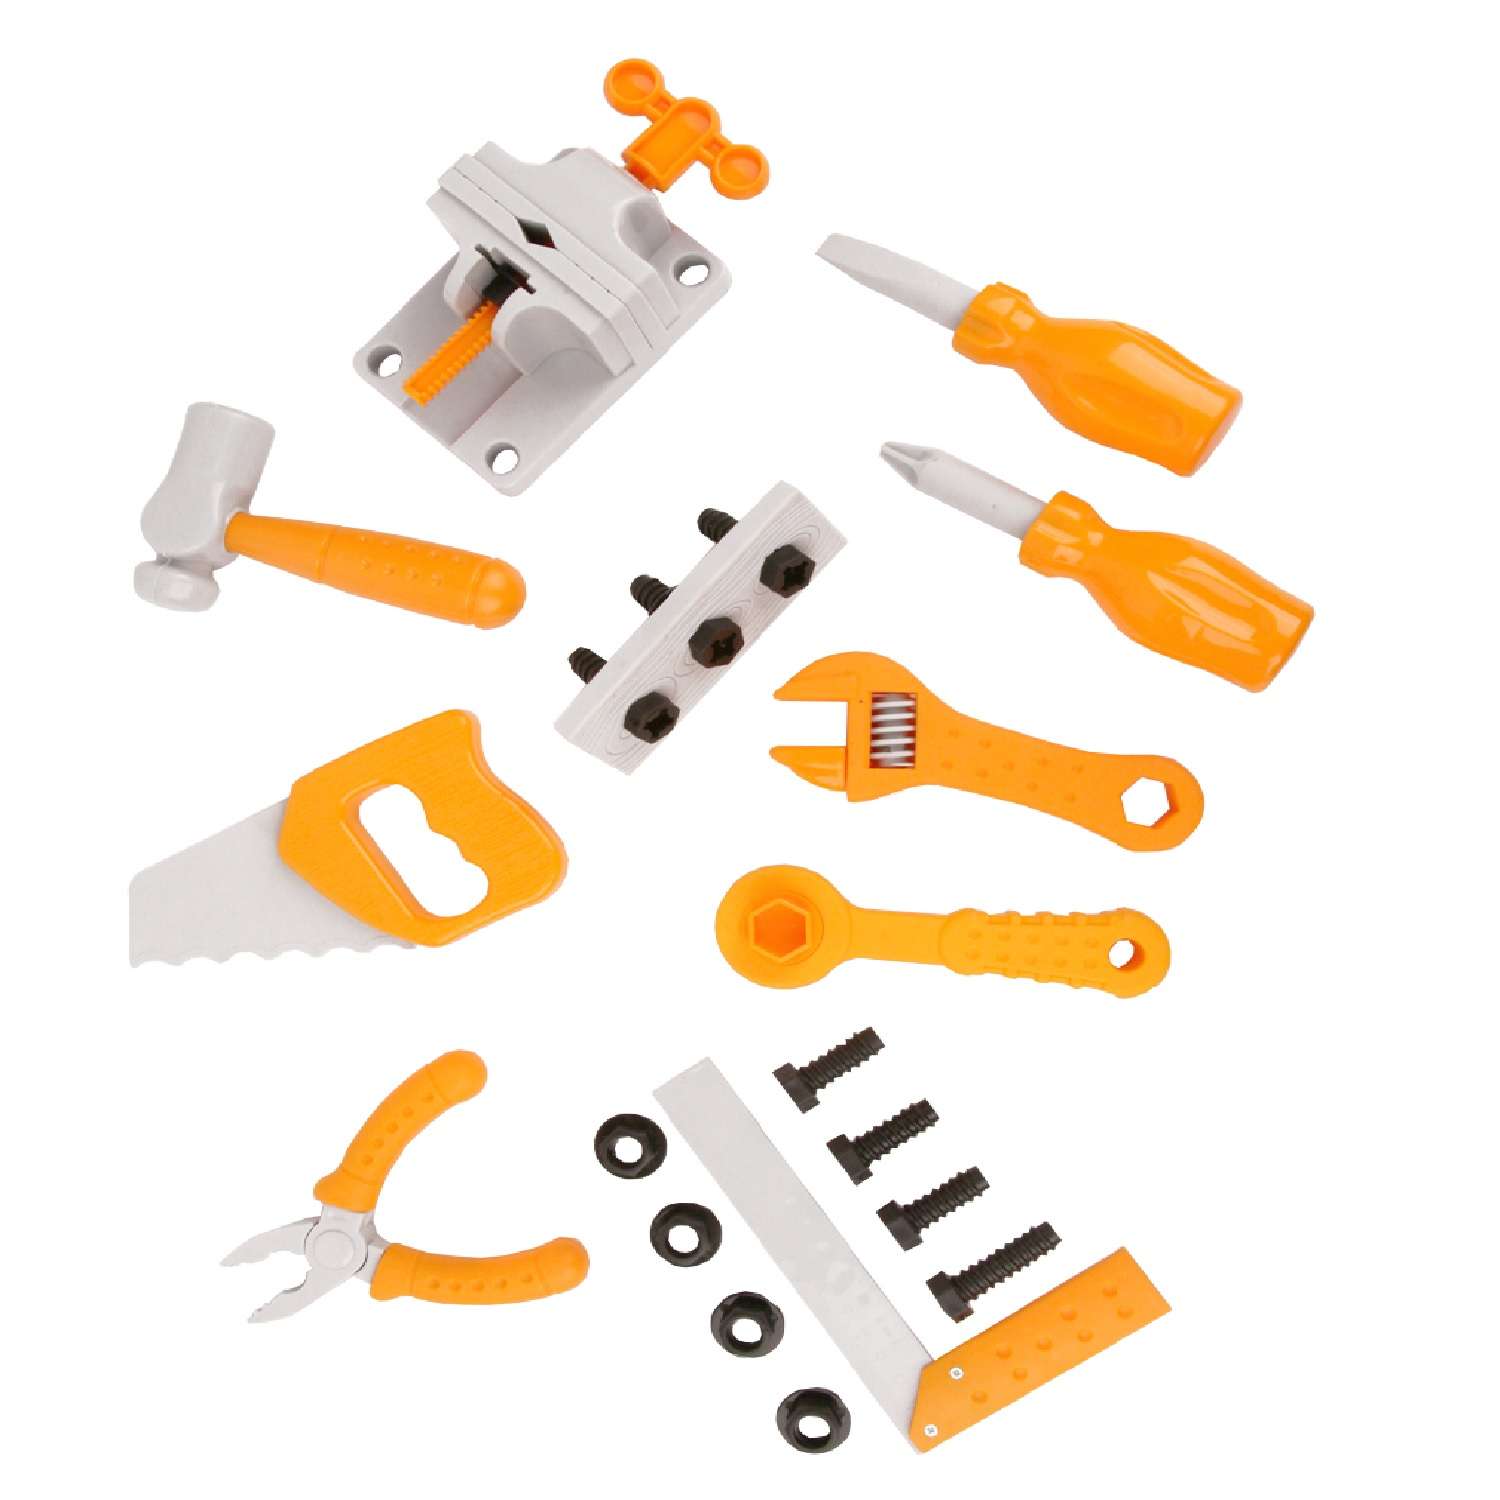 Игровой набор детский Green Plast игрушечные инструменты в мешке 24 предметов - фото 3